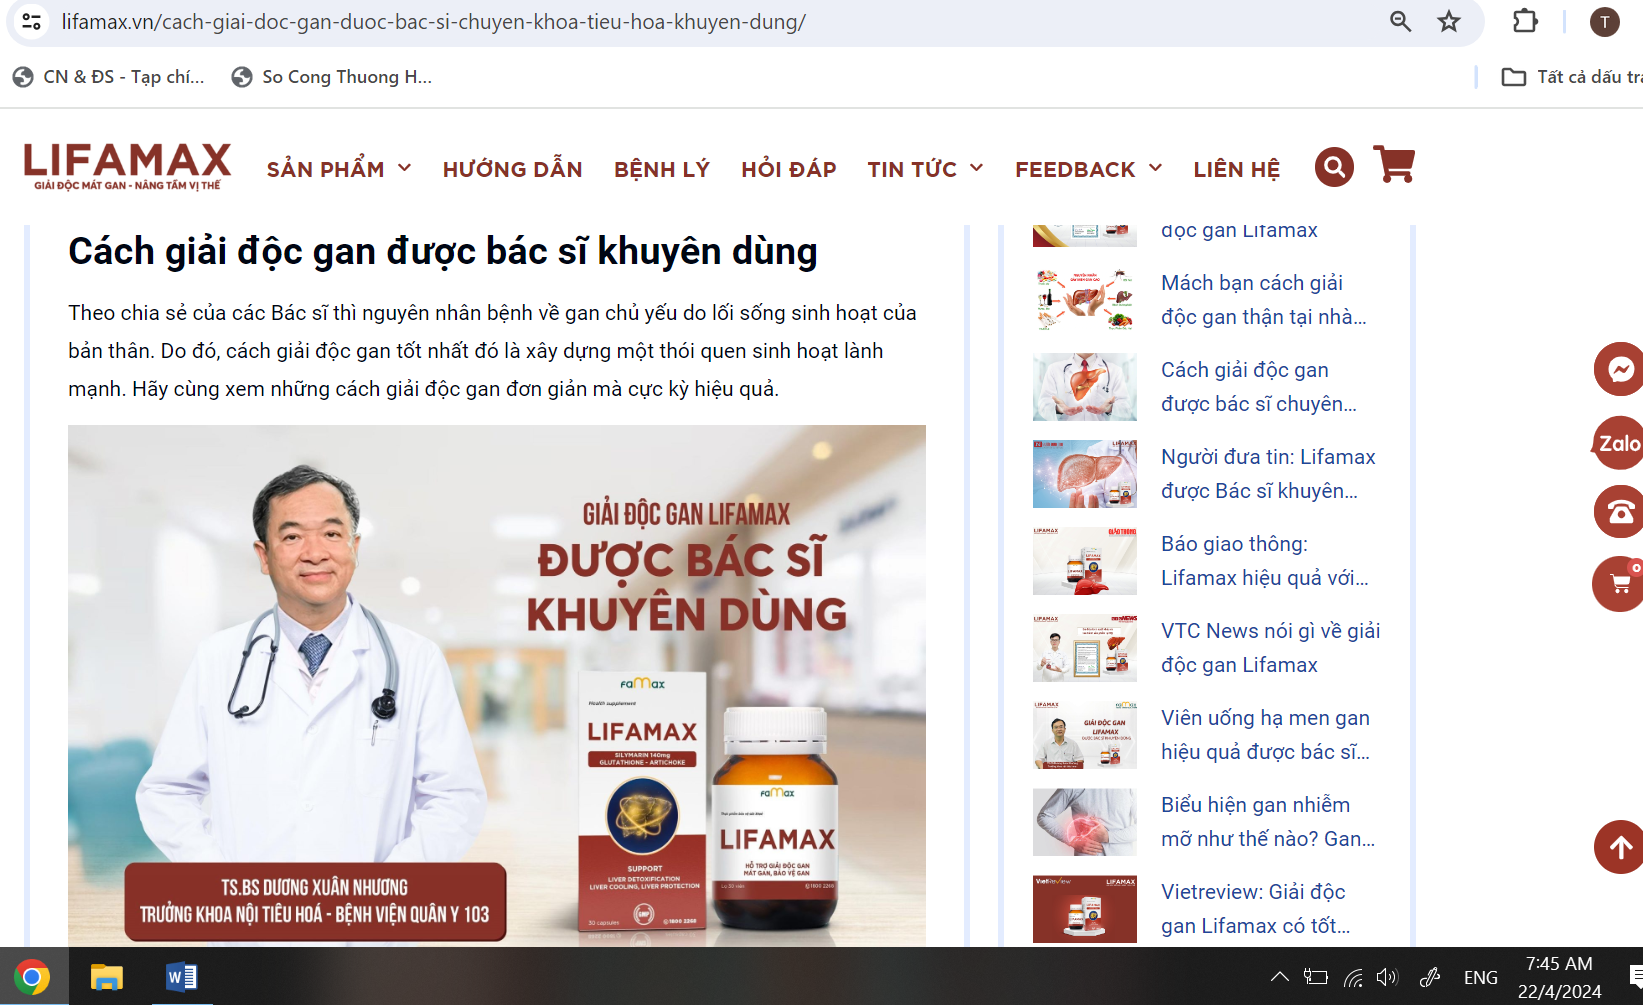 Sử dụng hình ảnh TS. BS Dương Xuân Nhương, Trưởng khoa nội Tiêu hóa Bệnh viện Quân Y 103 để quảng cáo sả n phẩm